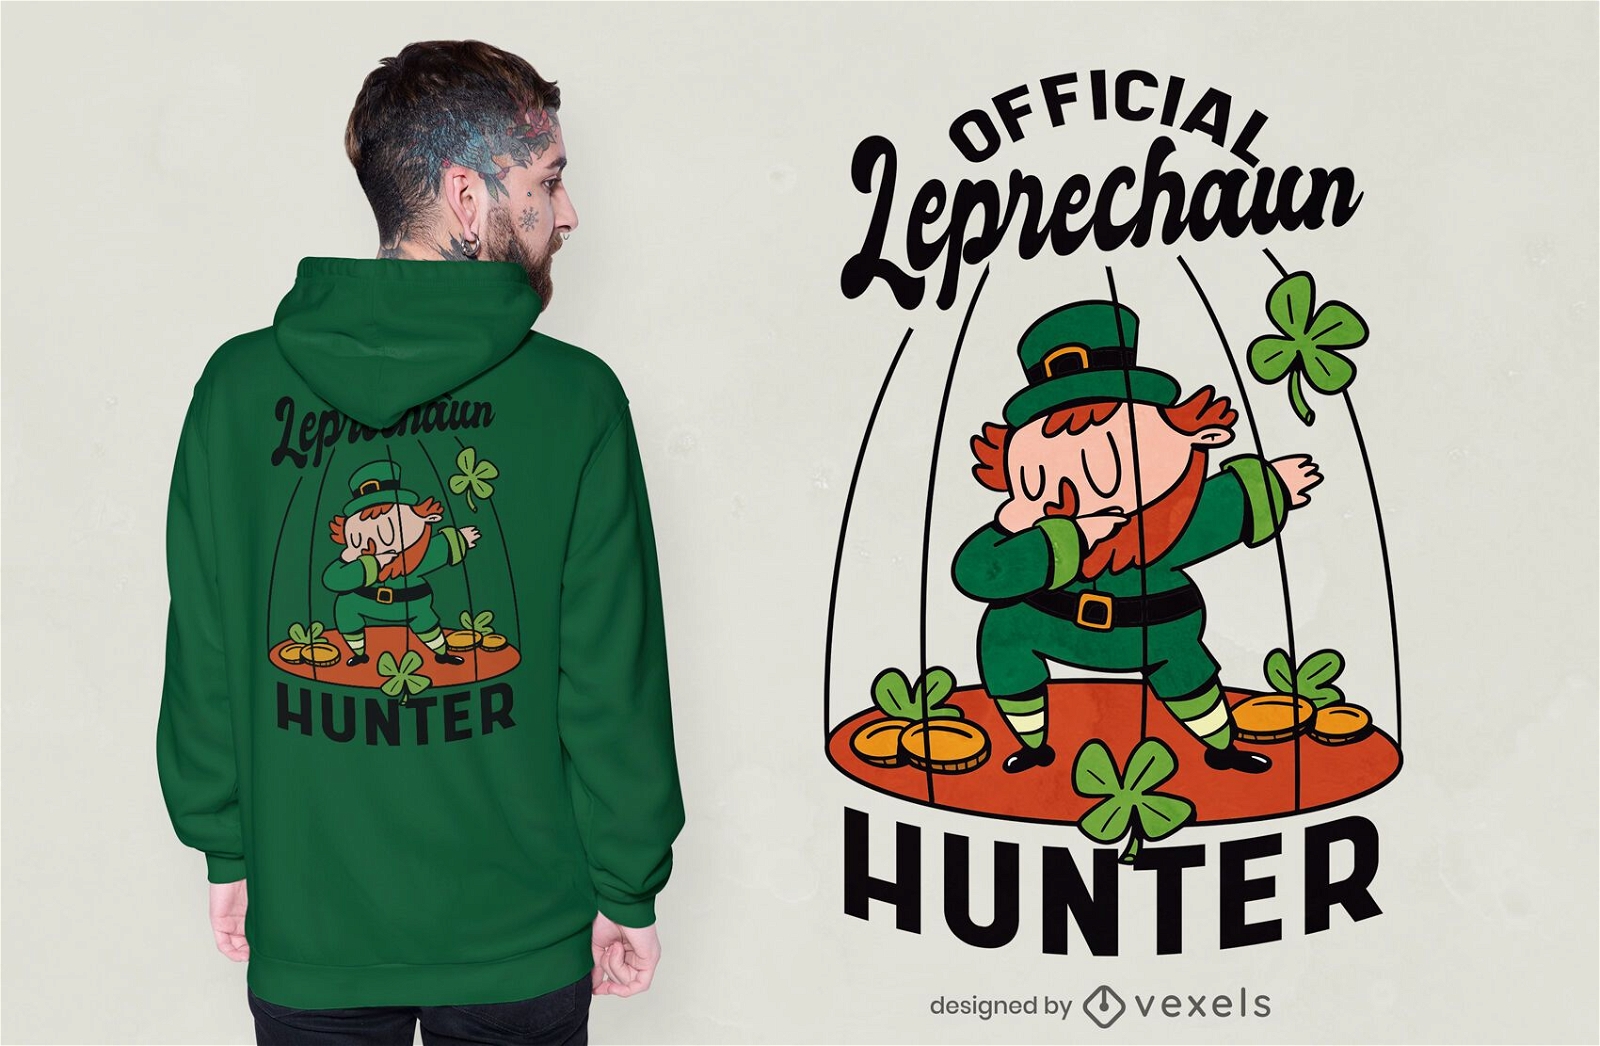 Leprechaun hunter t-shirt design